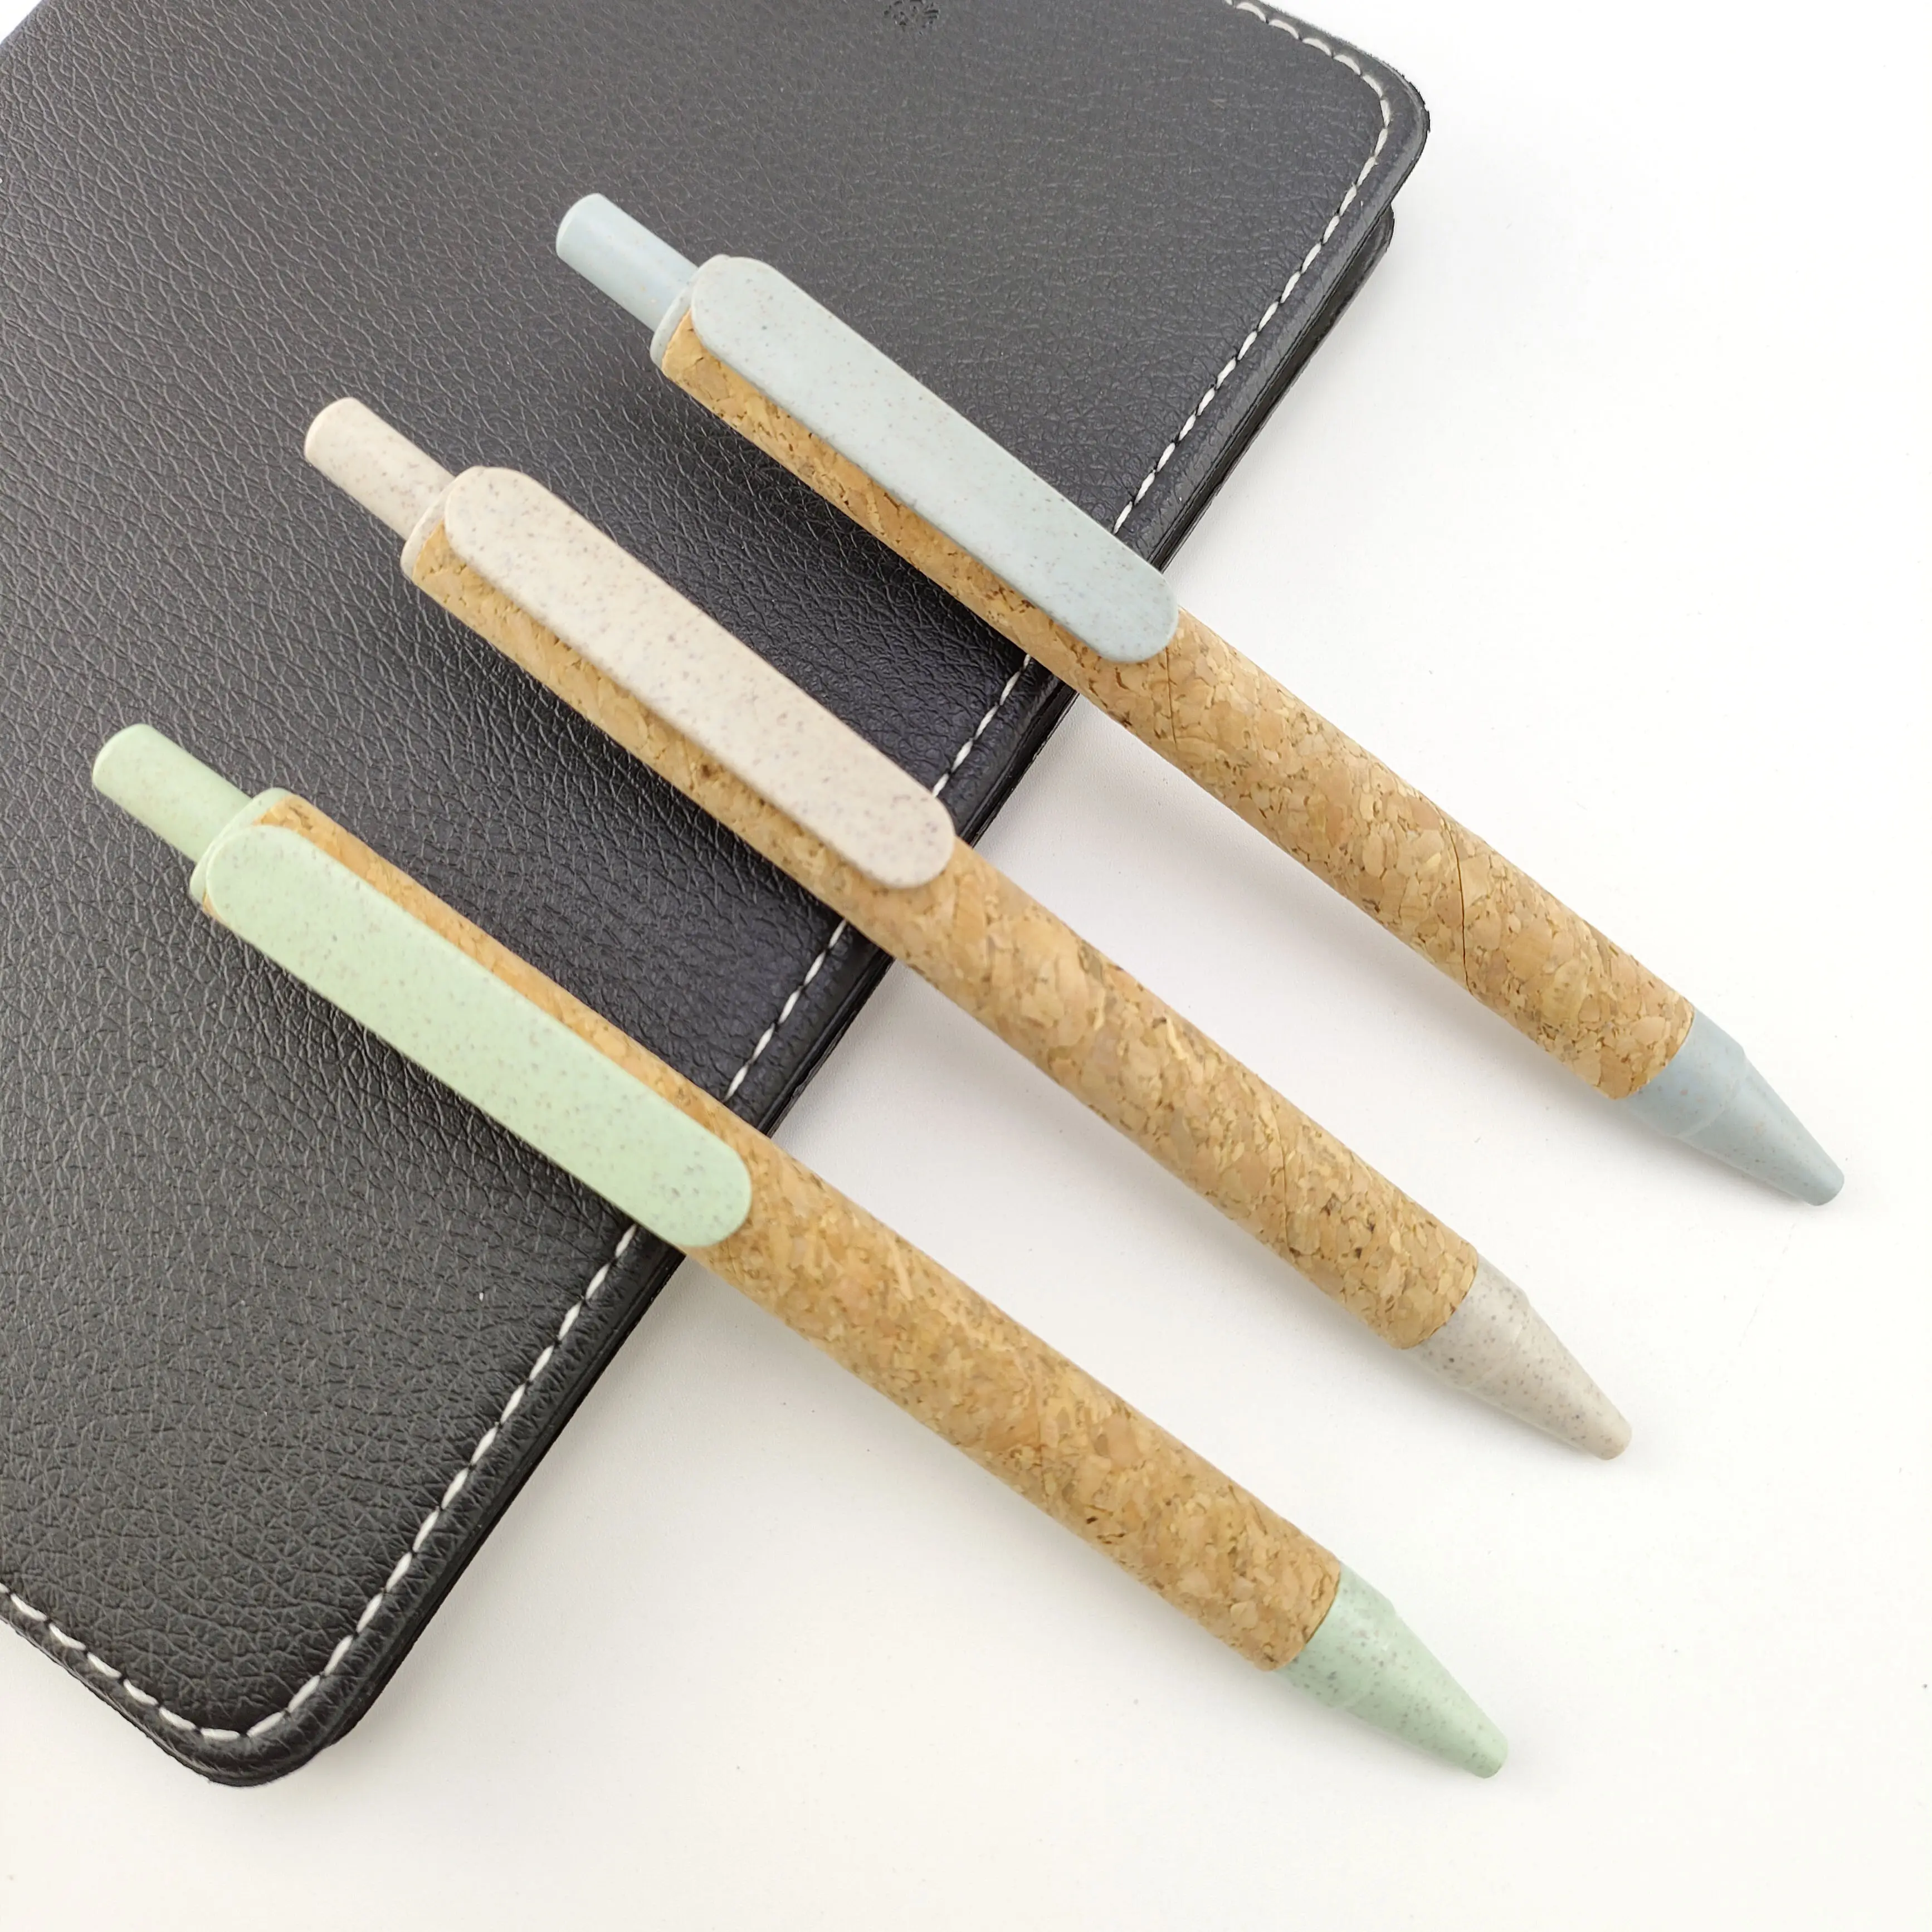 Les fabricants fournissent un stylo à bille en paille de blé stylo en liège stylo cadeau Le stylo à bille personnalisé peut être imprimé